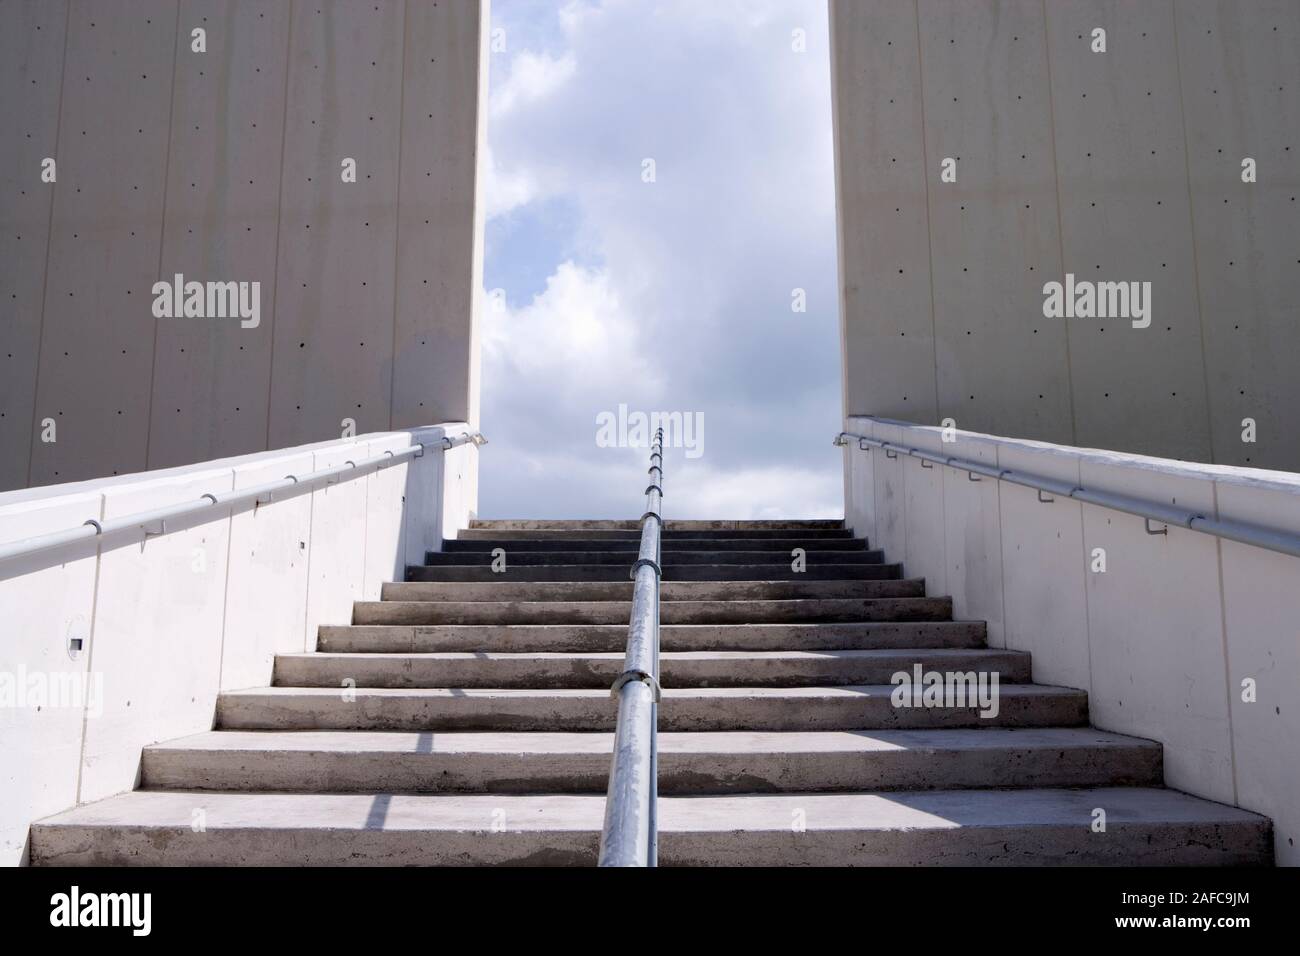 Escalera que conduce hacia arriba. Miami, Florda Foto de stock